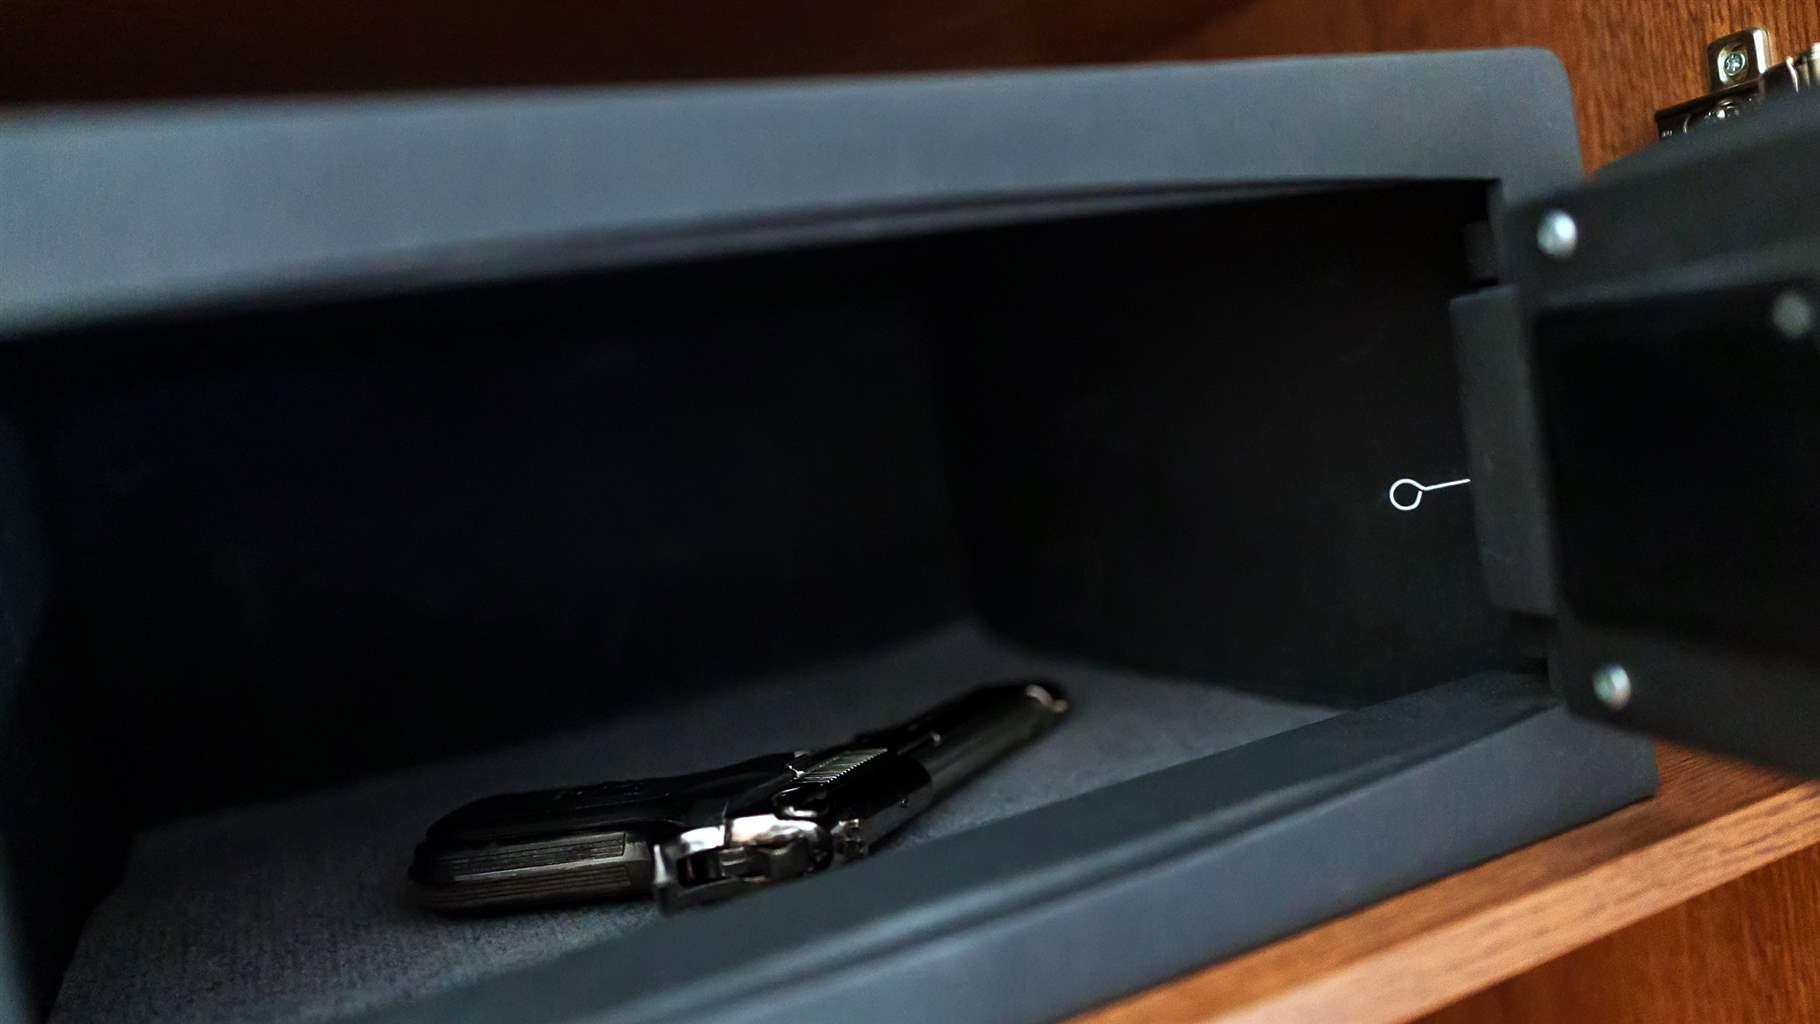  A handgun lies inside an open metal safe on a wooden shelf.